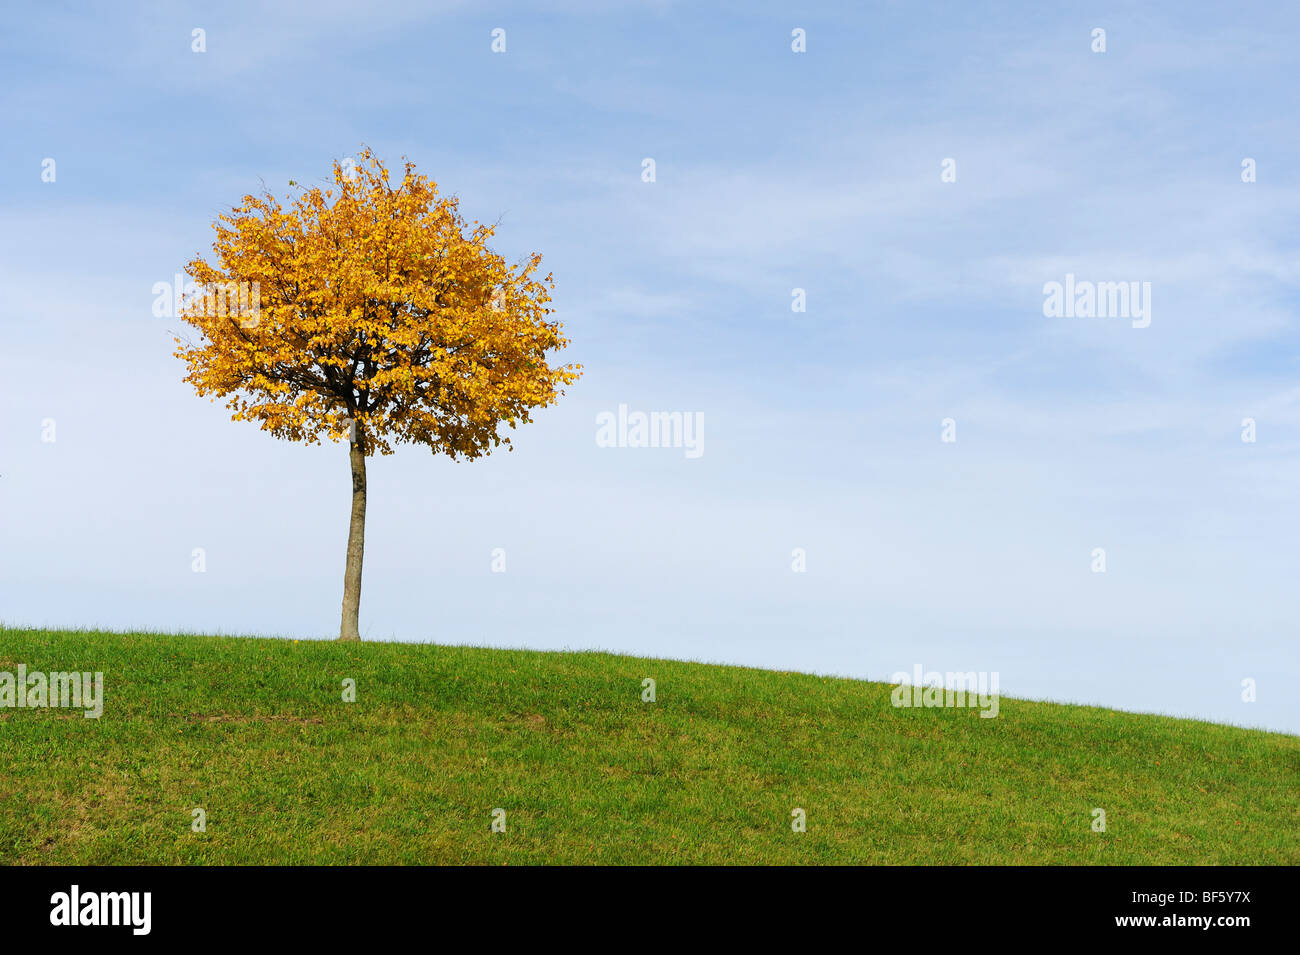 Linden tree (Tilia sp.), tree in autumn, Klausenpass, Switzerland, Europe Stock Photo